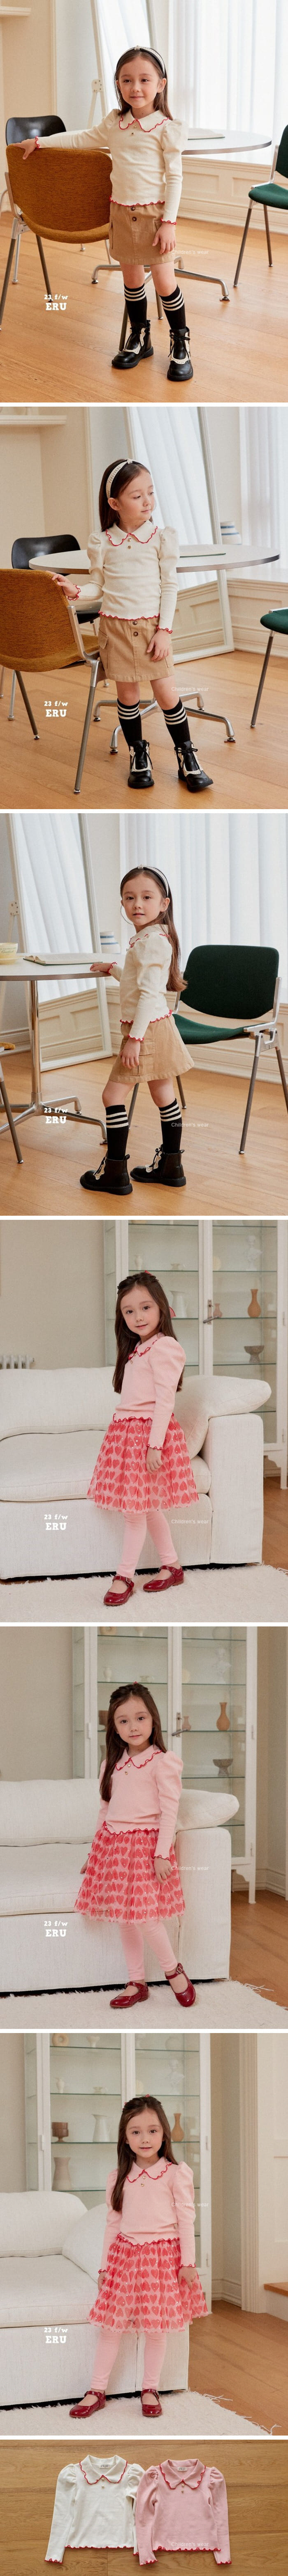 e.ru - Korean Children Fashion - #fashionkids - Jacquard Tee